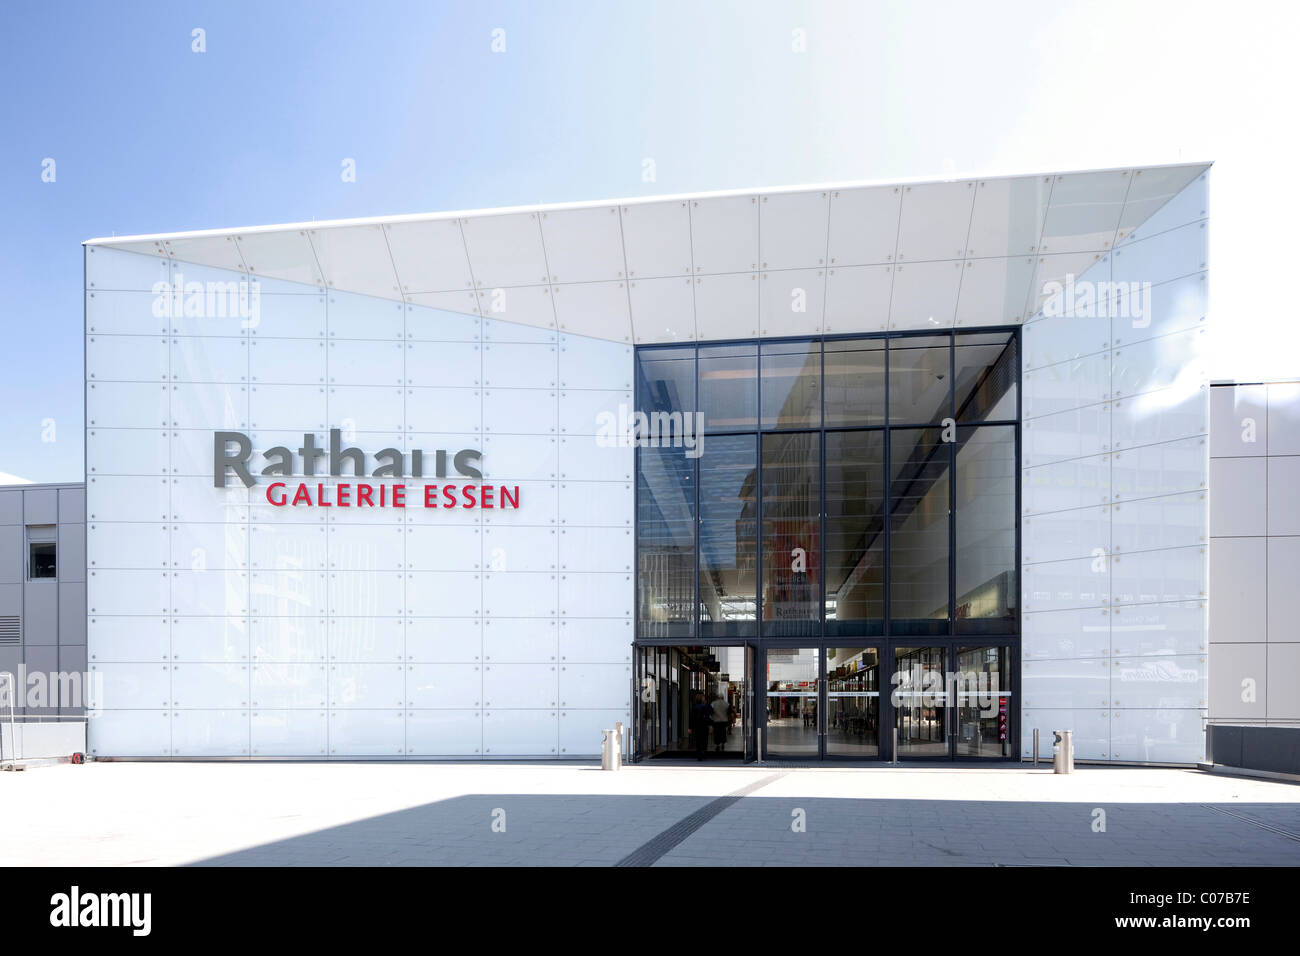 Rathaus-Galerie, Essen, région de la Ruhr, Nordrhein-Westfalen, Germany, Europe Banque D'Images